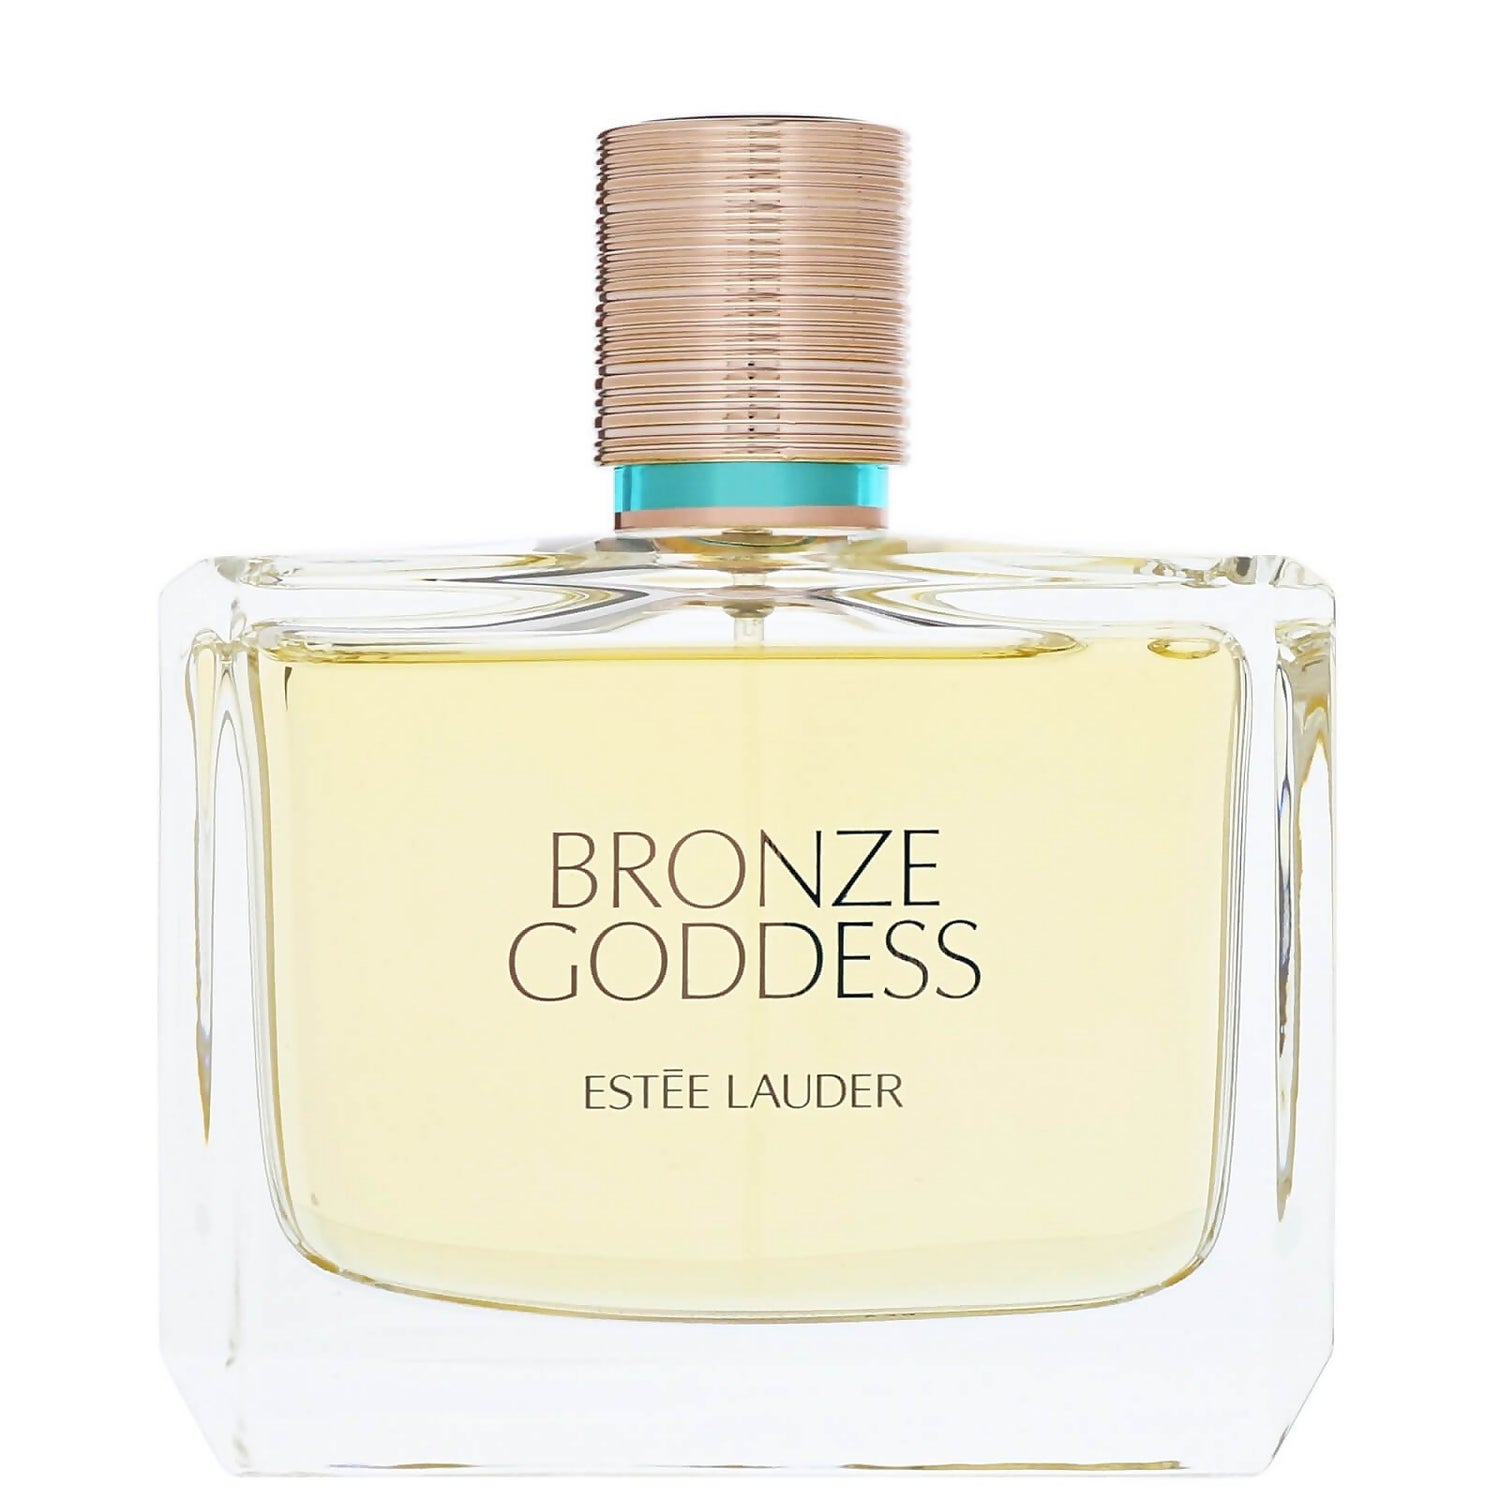 Glorious Let at ske komme til syne Estée Lauder Bronze Goddess Eau Fraiche Eau de Toilette Spray 100ml -  allbeauty